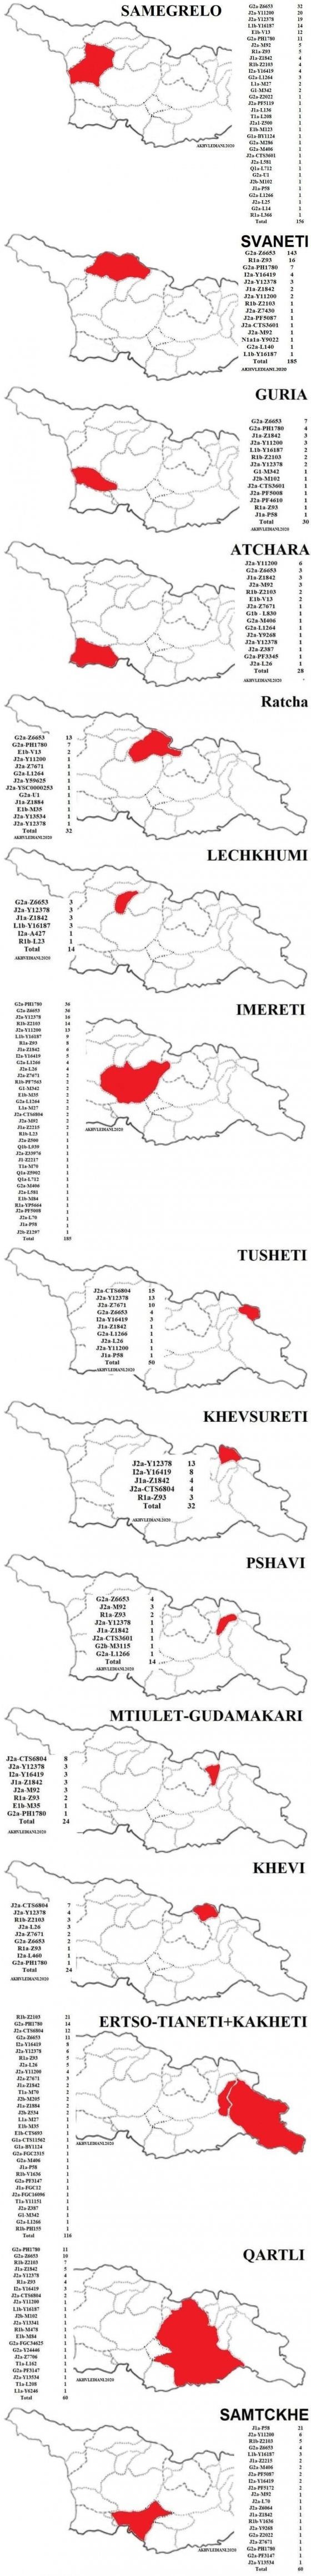 ქართული გვარების ჰაპლოჯგუფები / Haplogroups of the Georgian Surnames